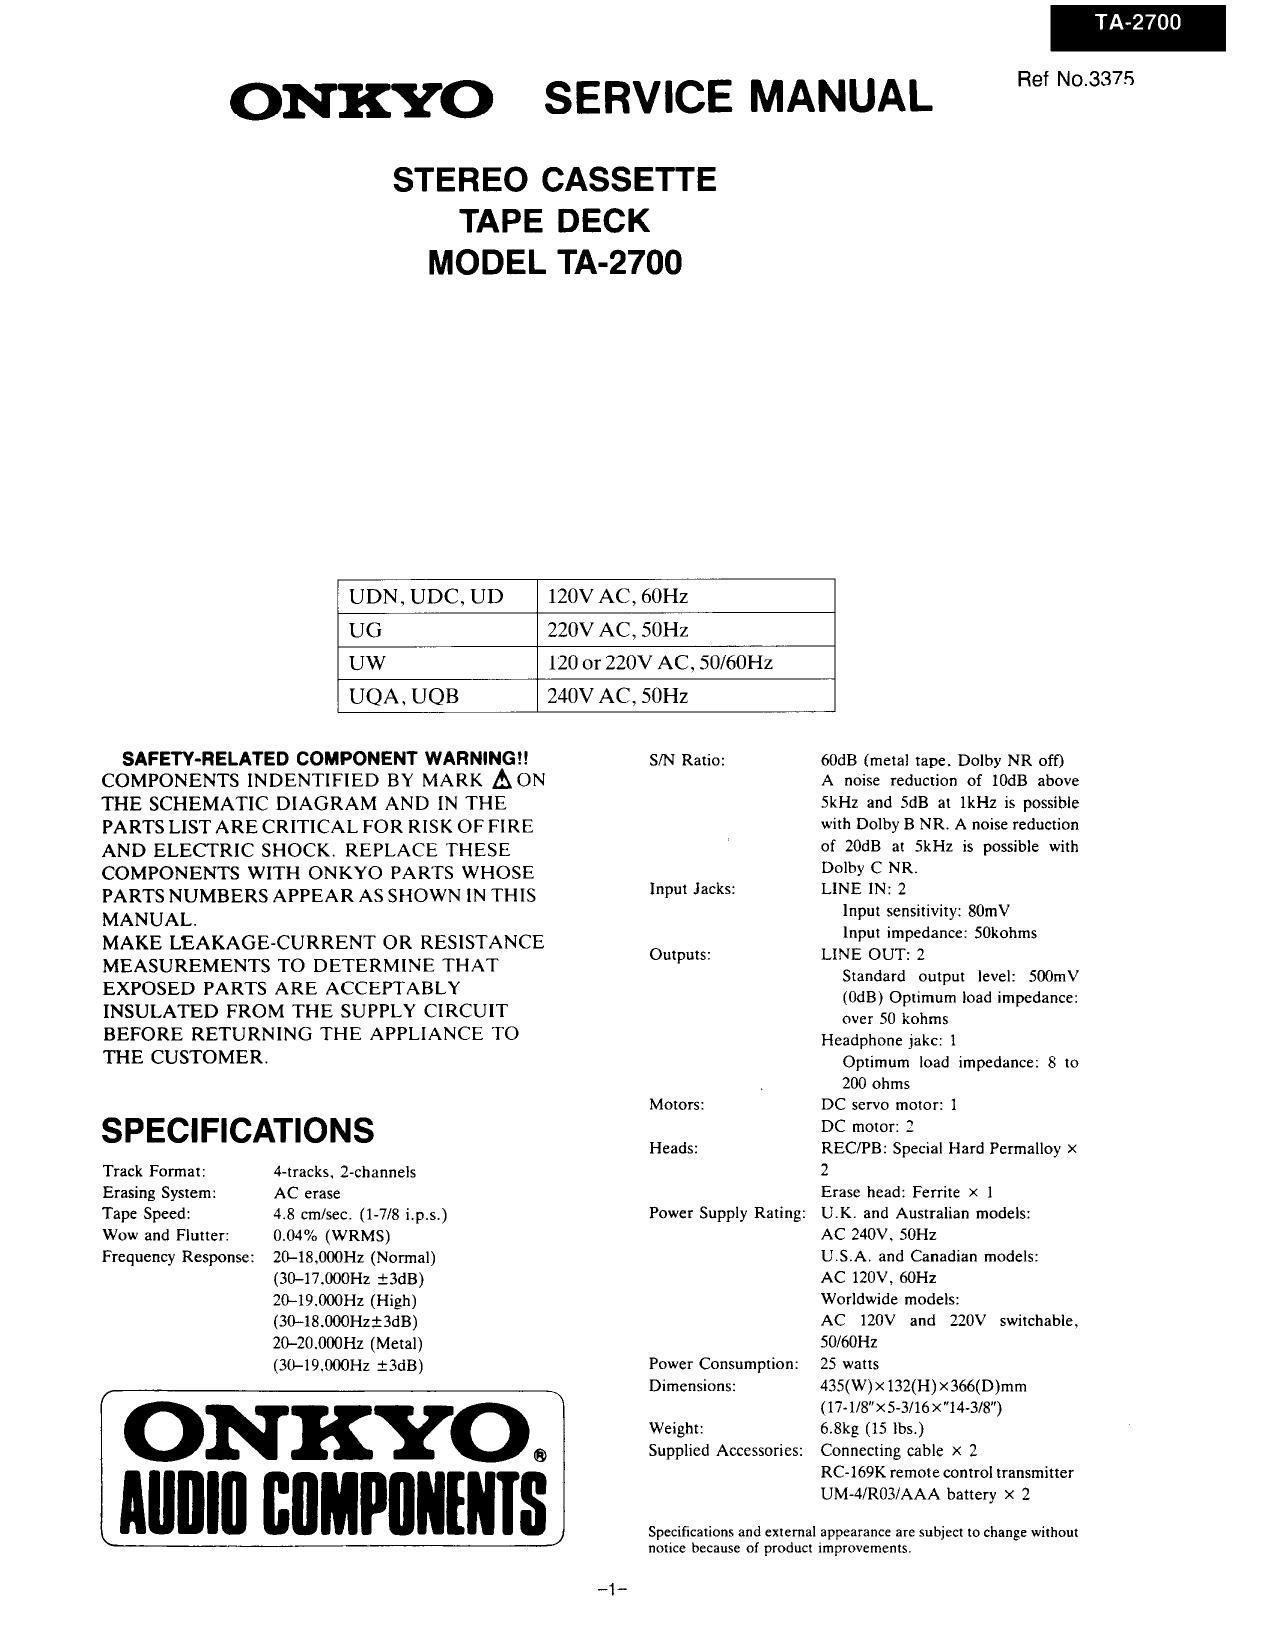 Onkyo TA 2700 Service Manual